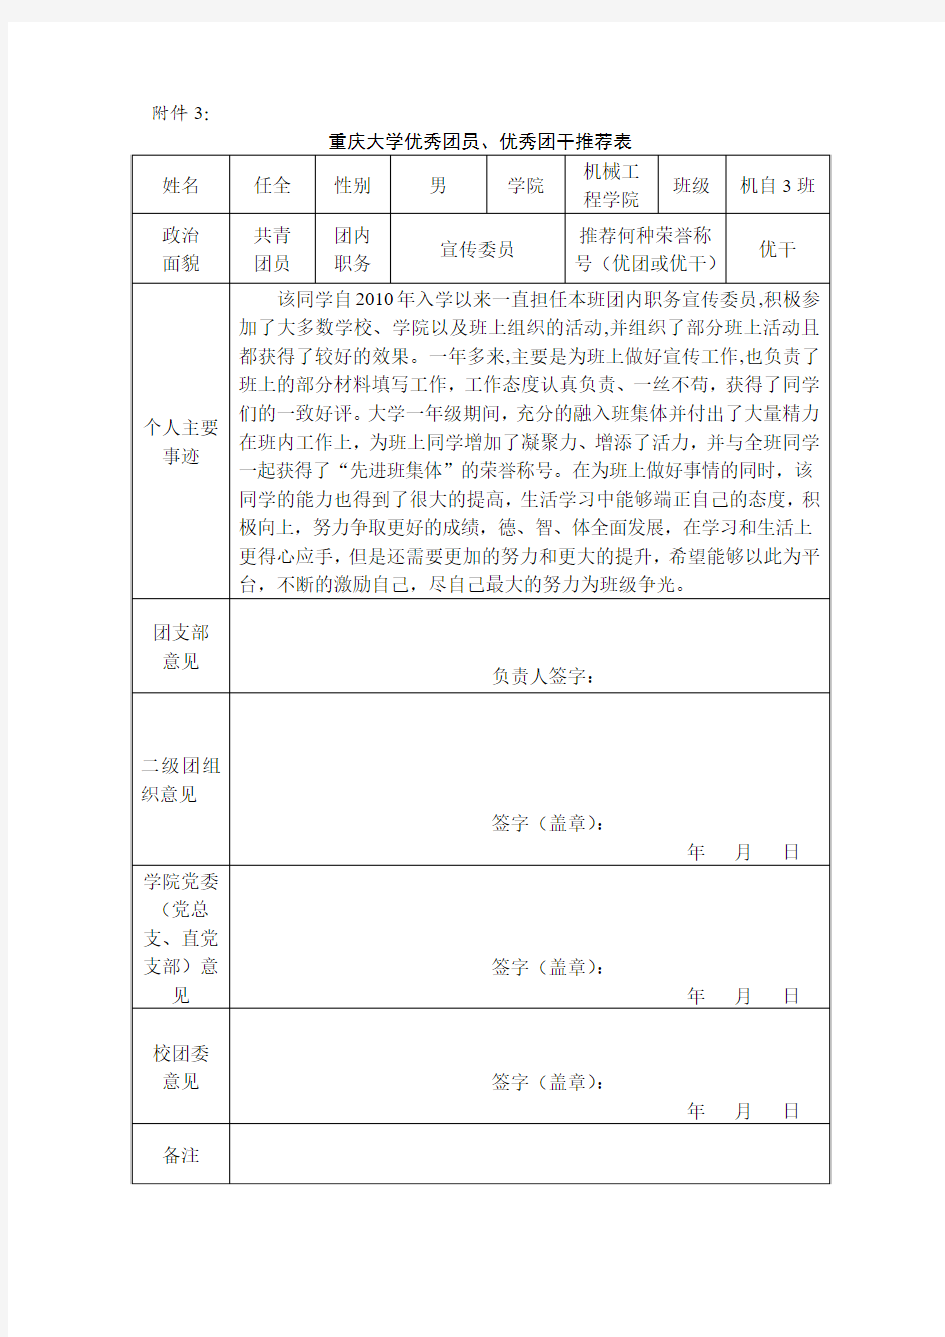 重庆大学优秀团员、优秀团干推荐表